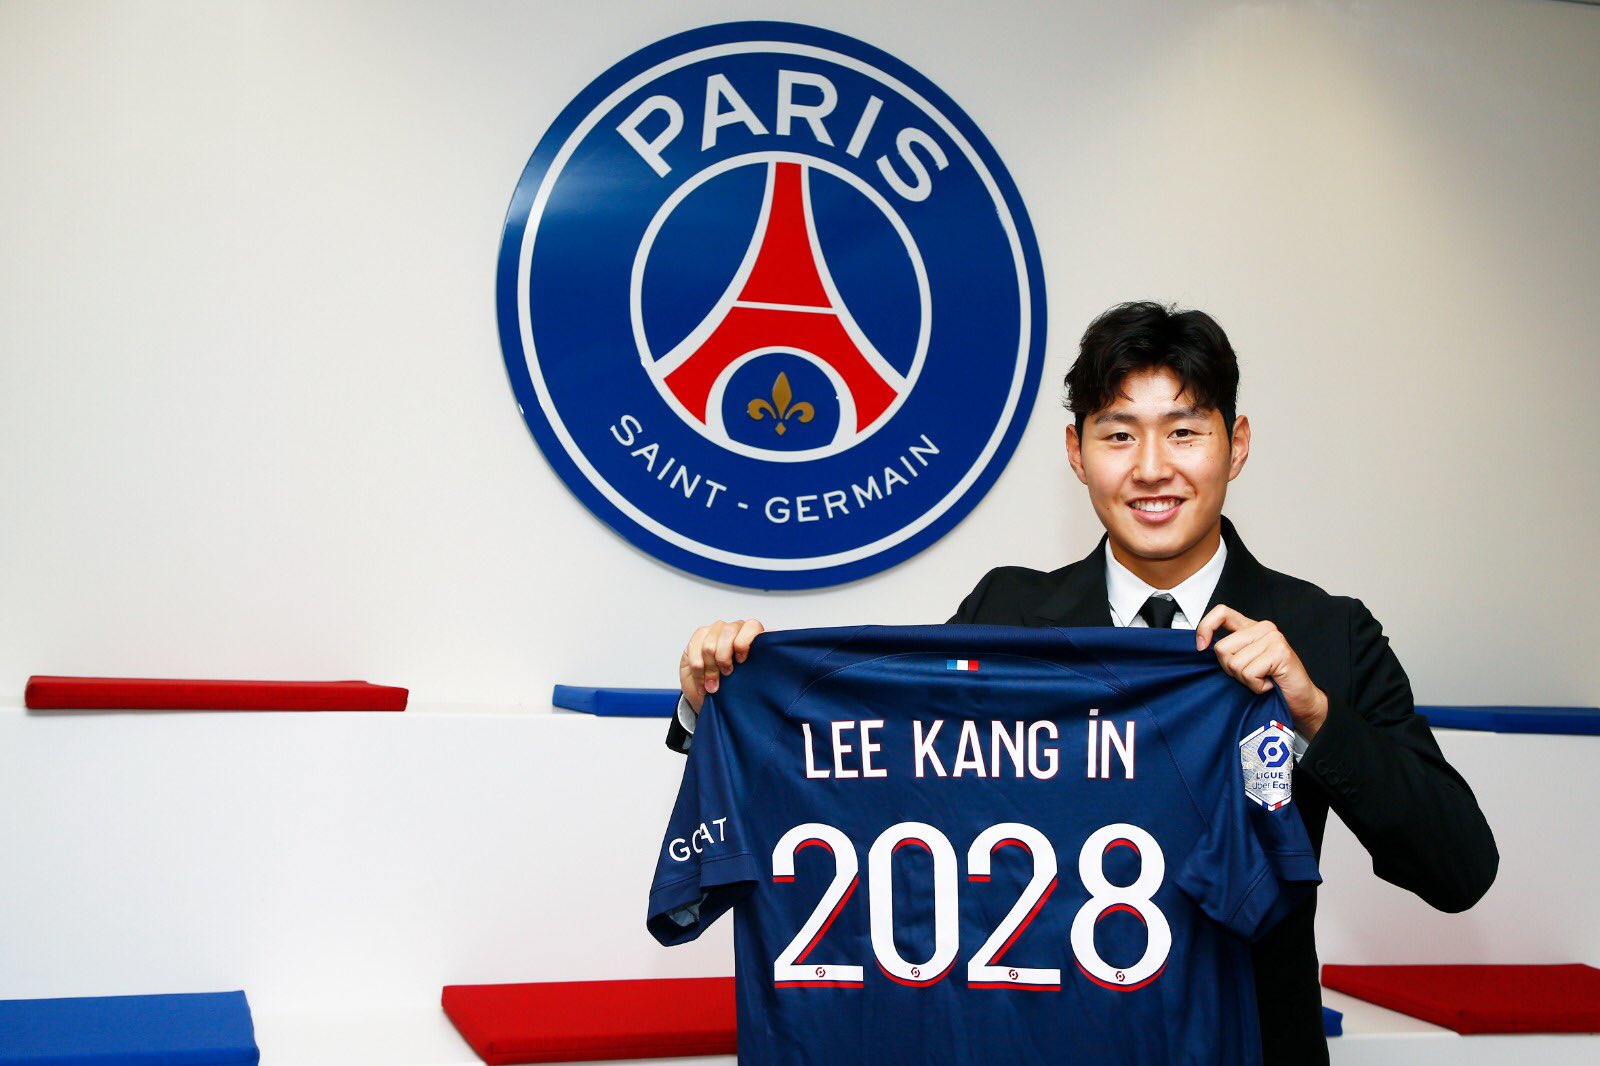 Lee Kang in 2023